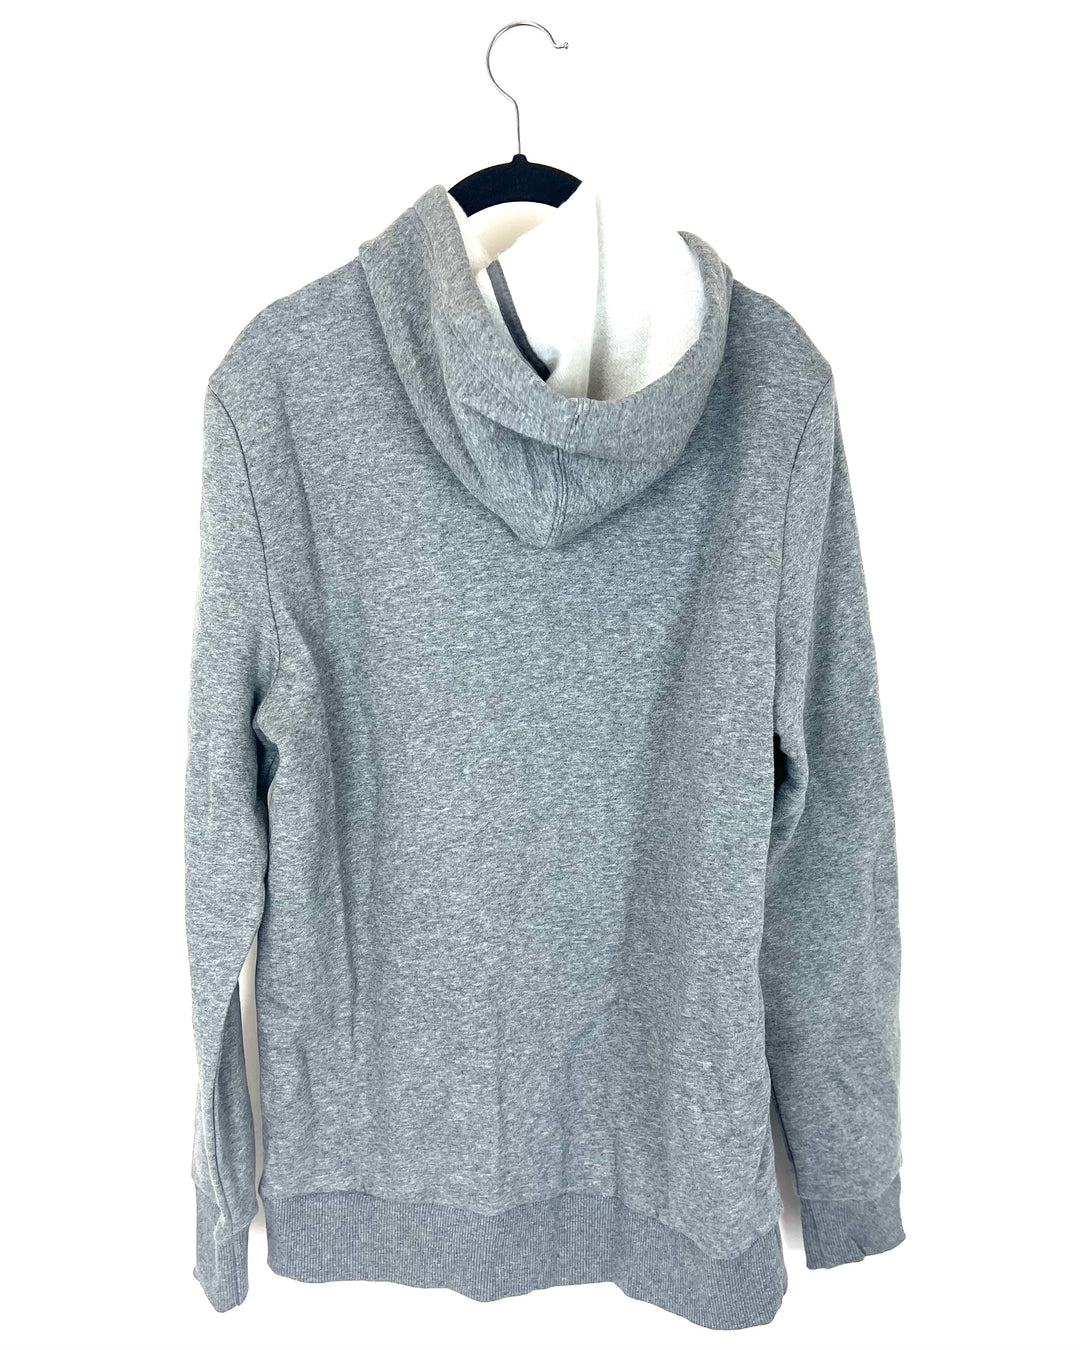 Gray Zip Up Sweatshirt - Size 4/6